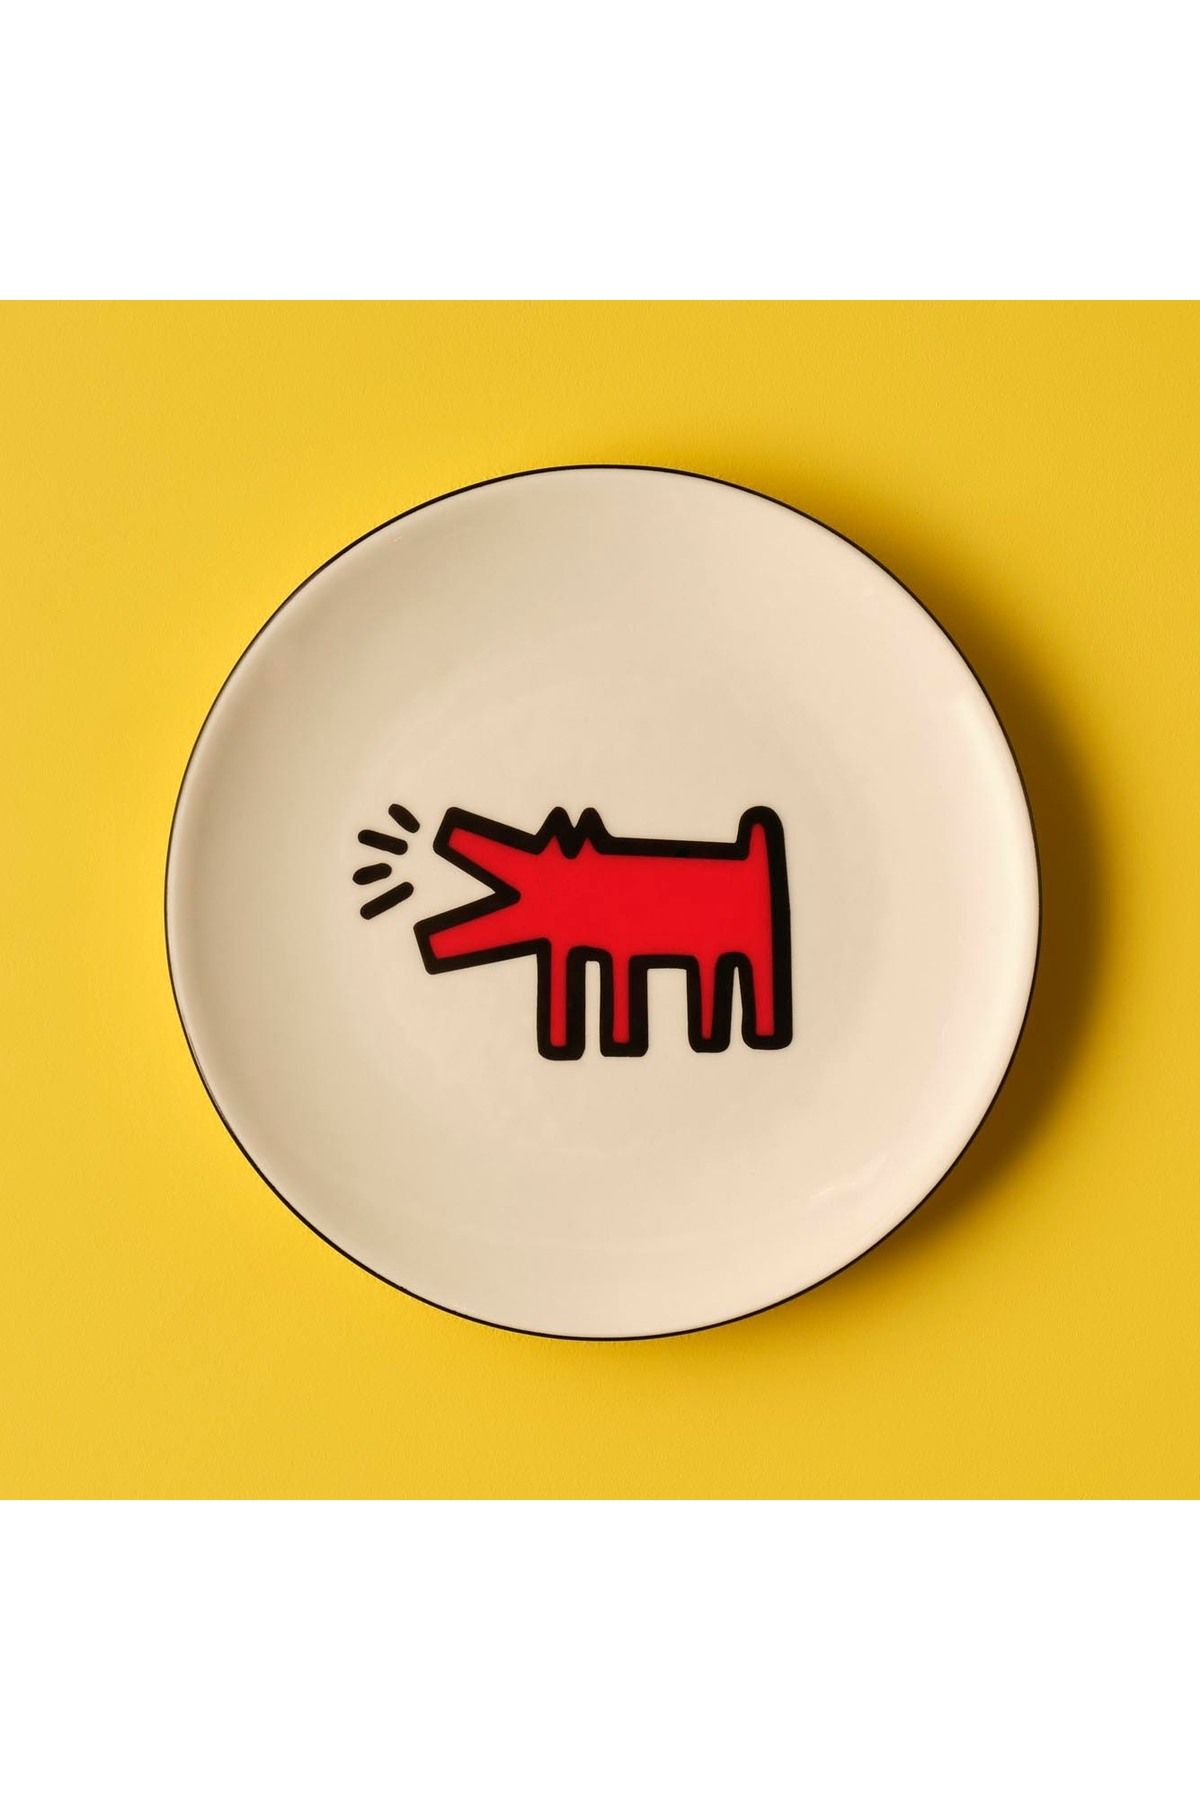 Bella Maison Keith Haring Paw Porselen Pasta Tabağı Kırmızı (19 cm)